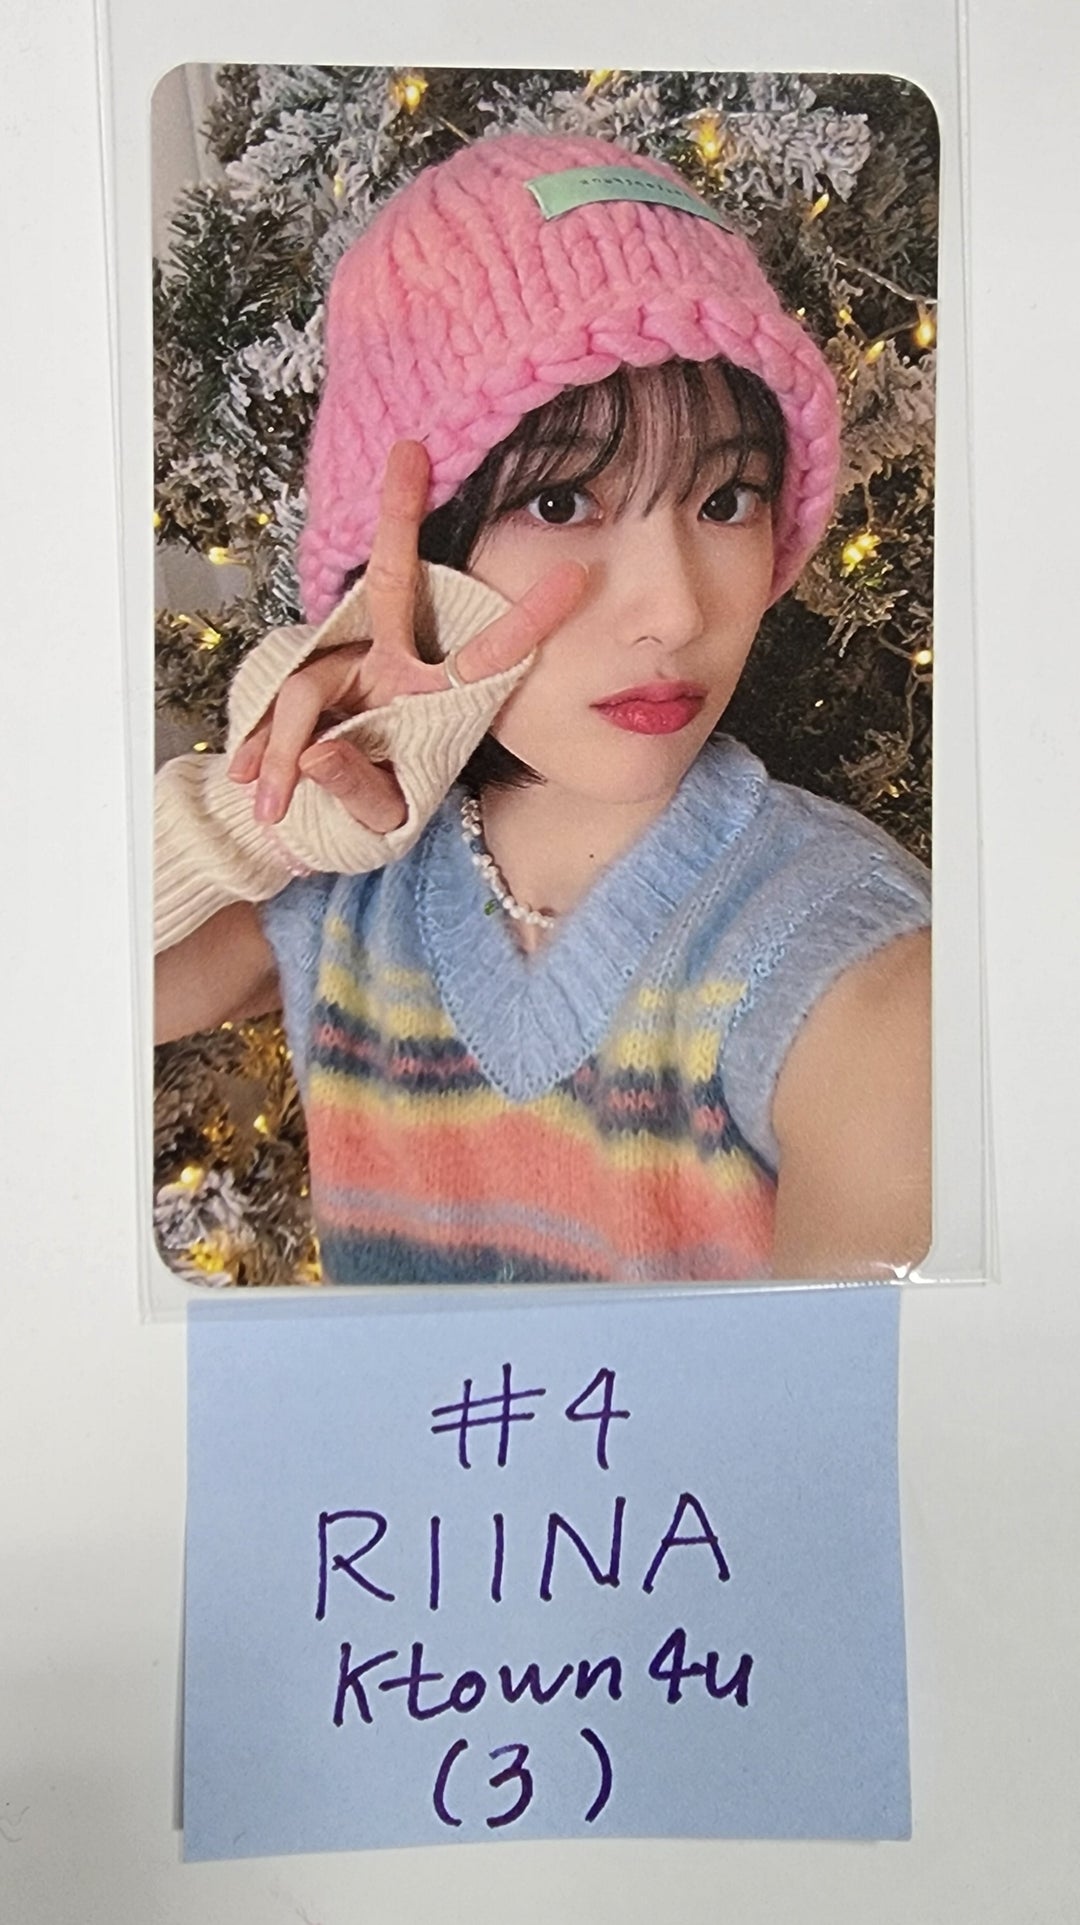 H1-KEY "Rose Blossom" 미니 1집 - Ktown4U 팬사인회 이벤트 포토카드